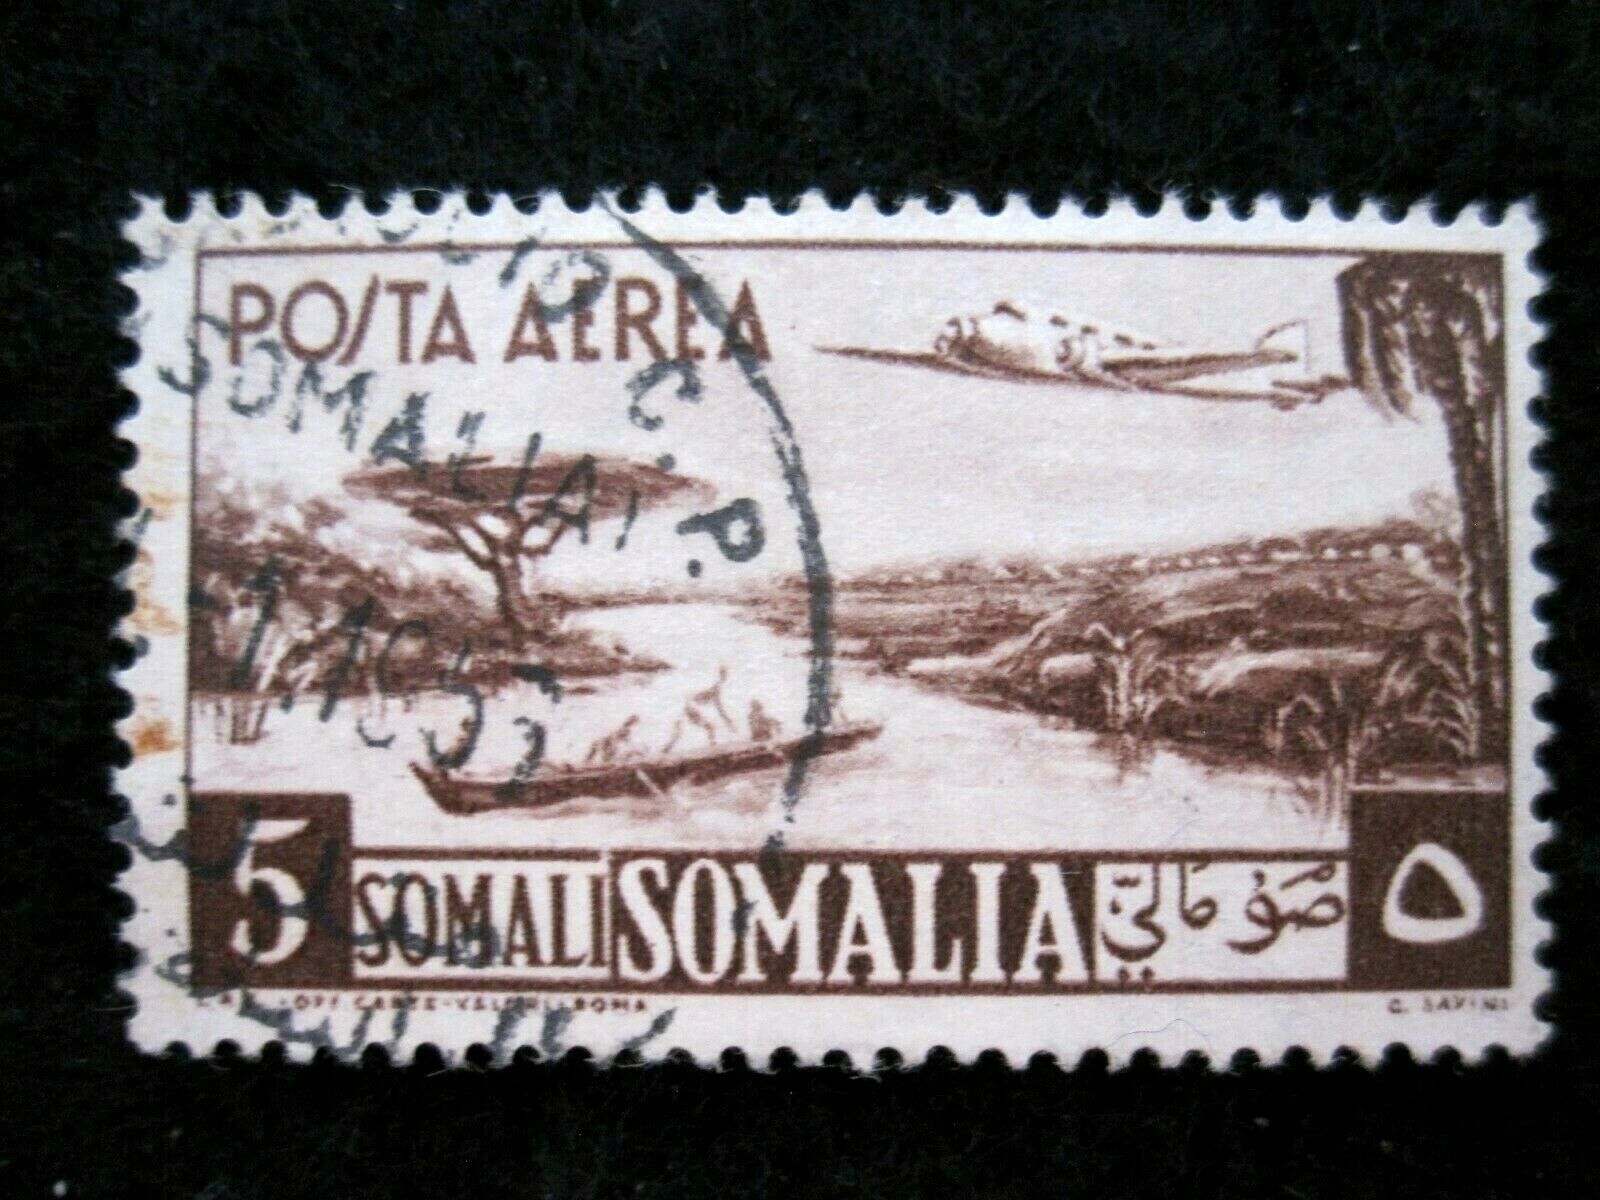 Somalia - Scott# C26 - Used - Cat Val $37.50